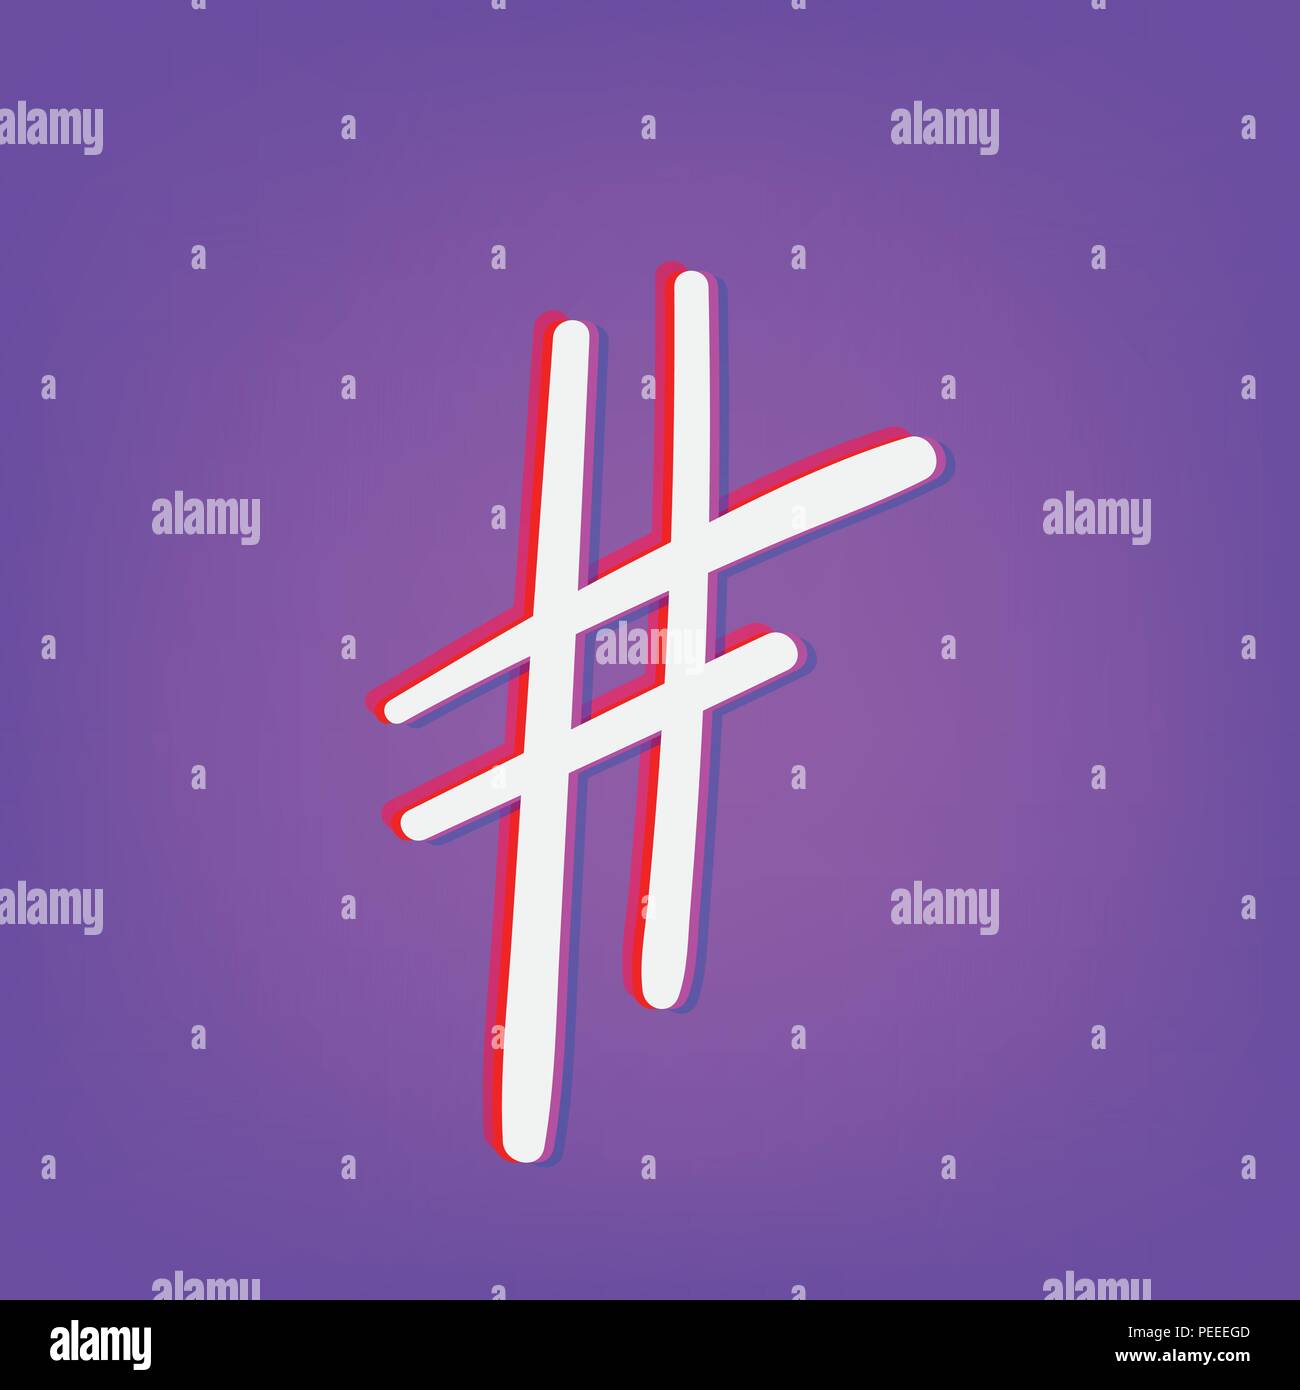 Disegnato a mano segno Hashtag isolato. Simbolo di numero. Glitch di aberrazione cromatica effetto. Elemento per il graphic design - blog, social media, banner, poster, Illustrazione Vettoriale